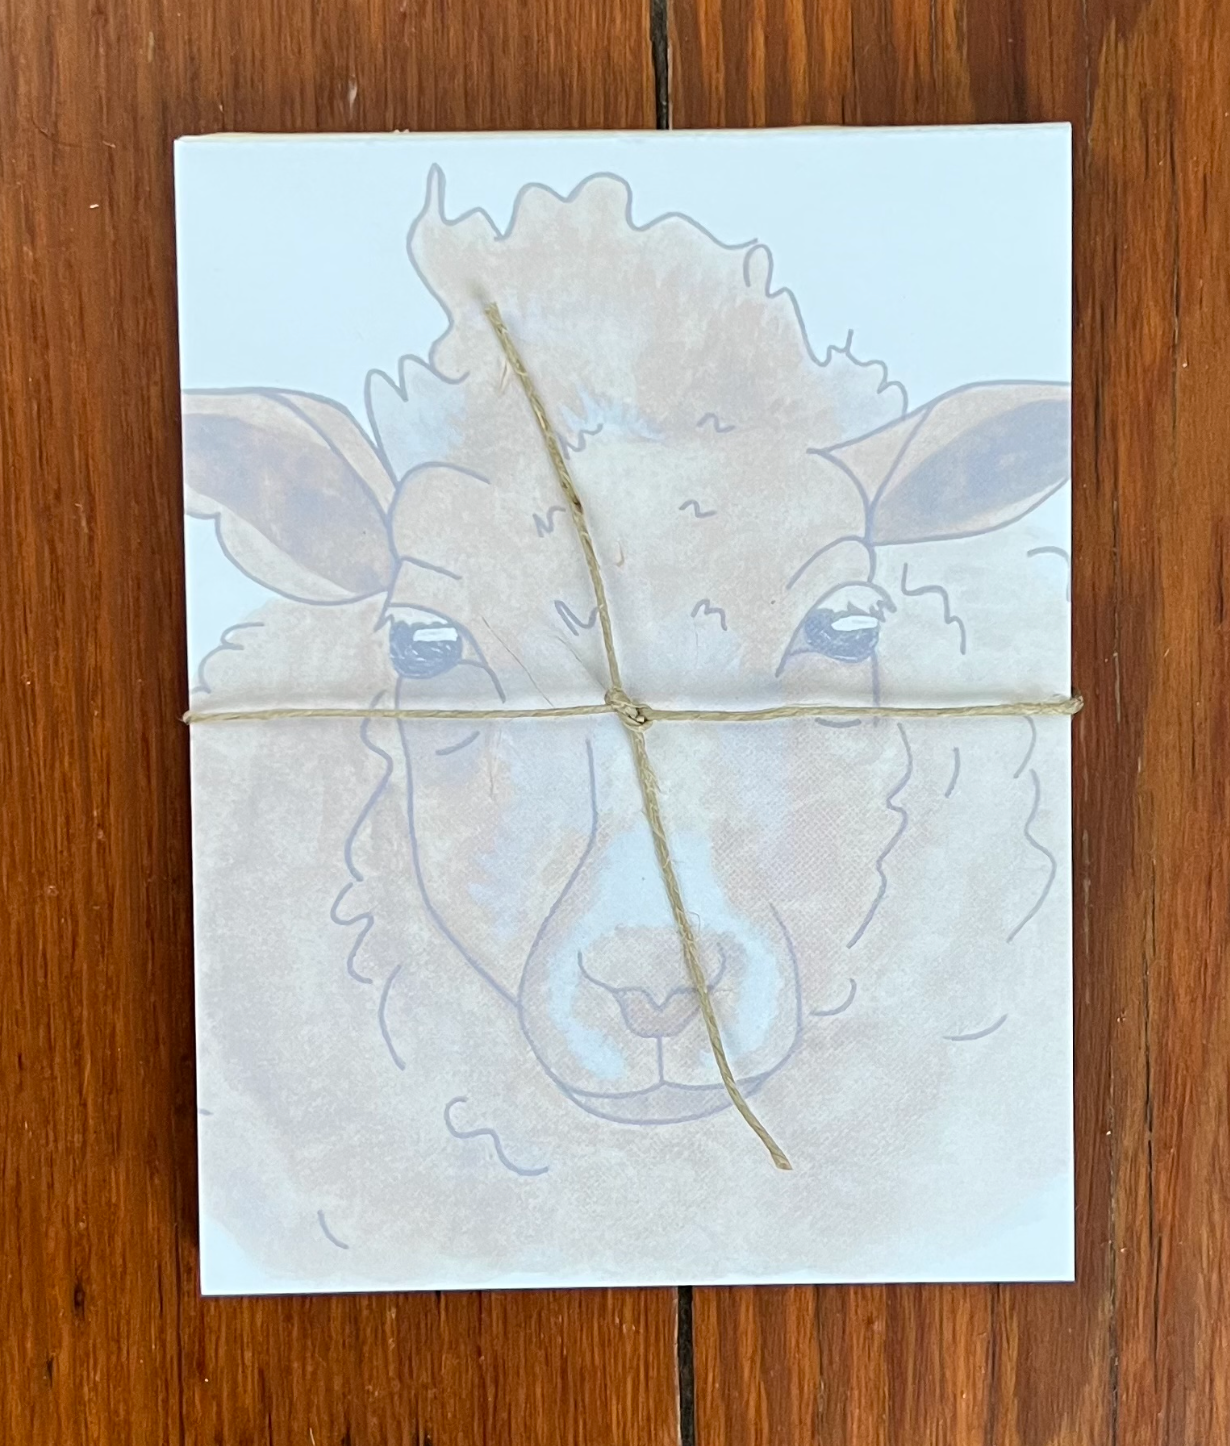 Brown Sheep Notepad